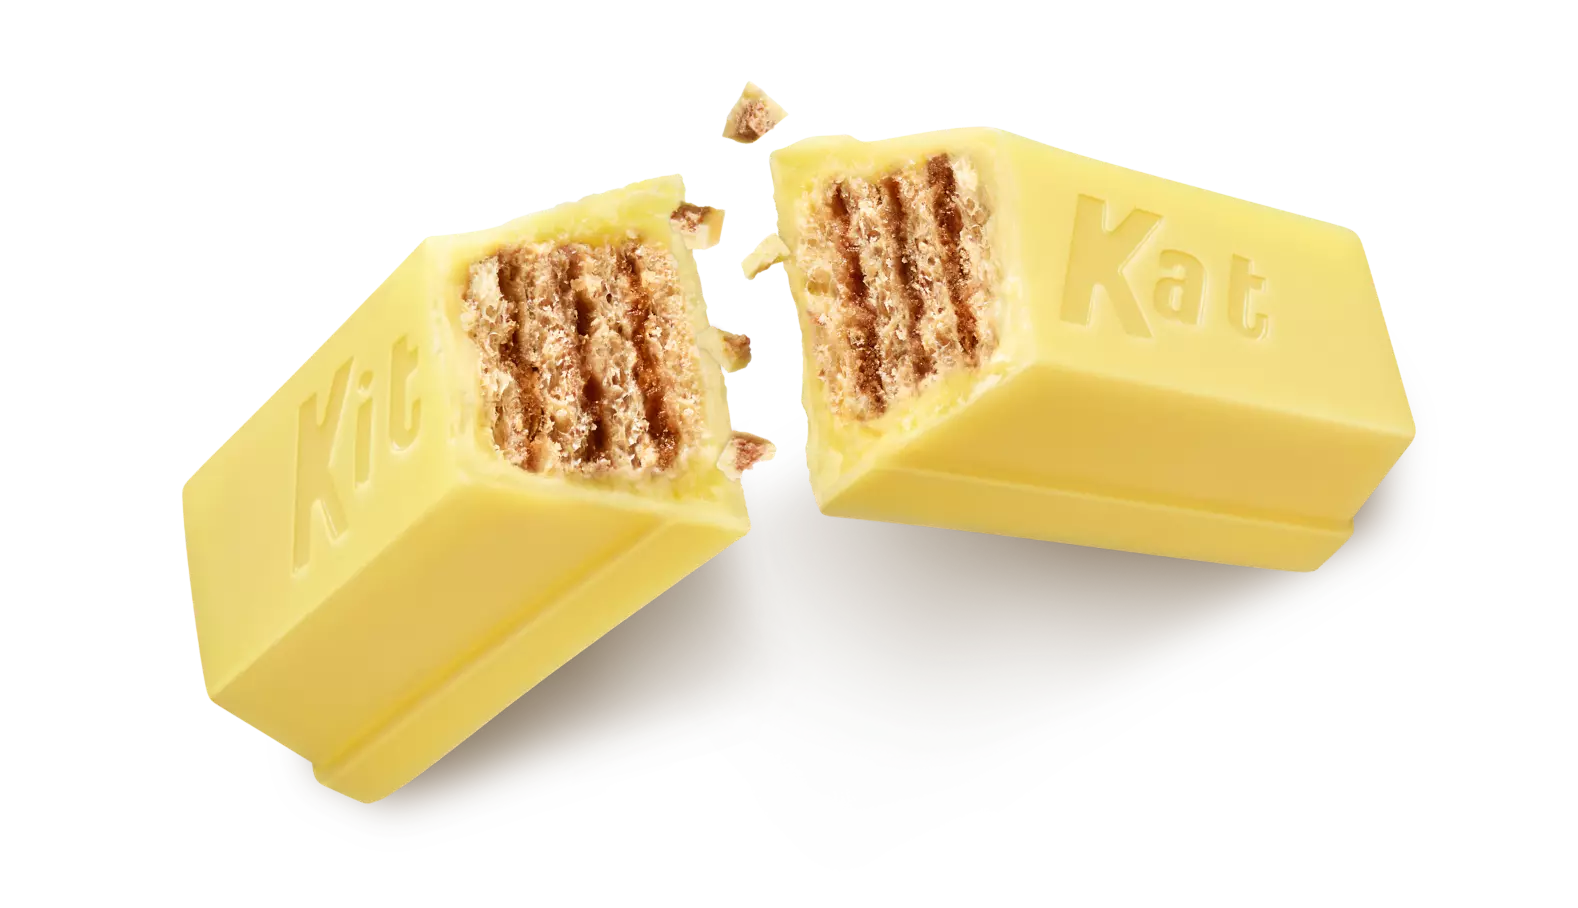 KIT KAT® Easter Lemon Crisp Miniatures Candy Bars, 8.4 oz bag - Out of Package